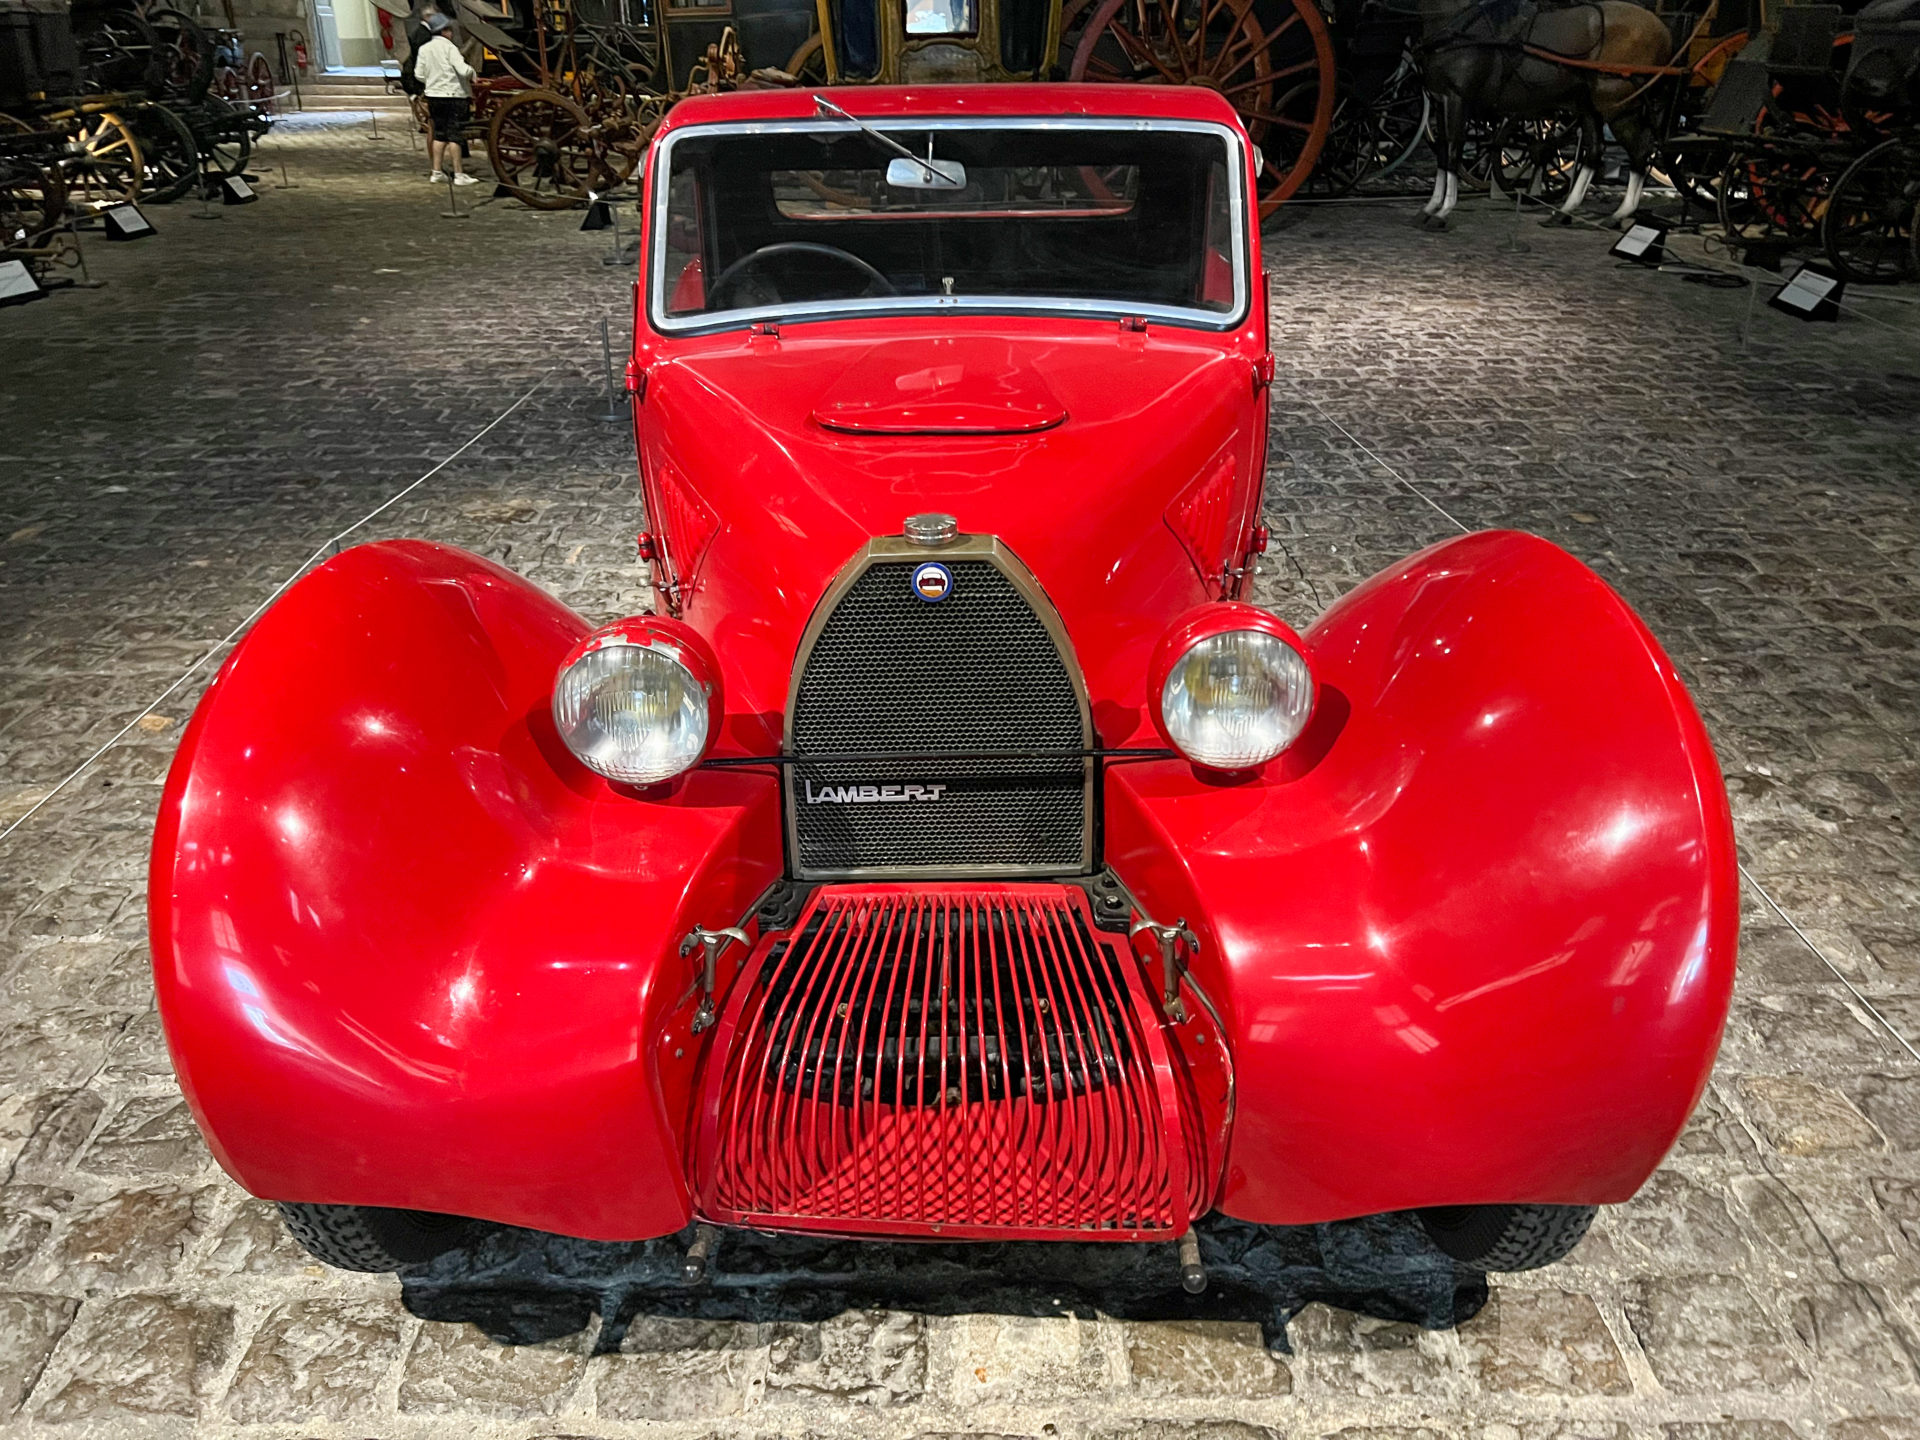 Ein roter Oldtimer vom Typ Lambert im Automuseum von Compiegne